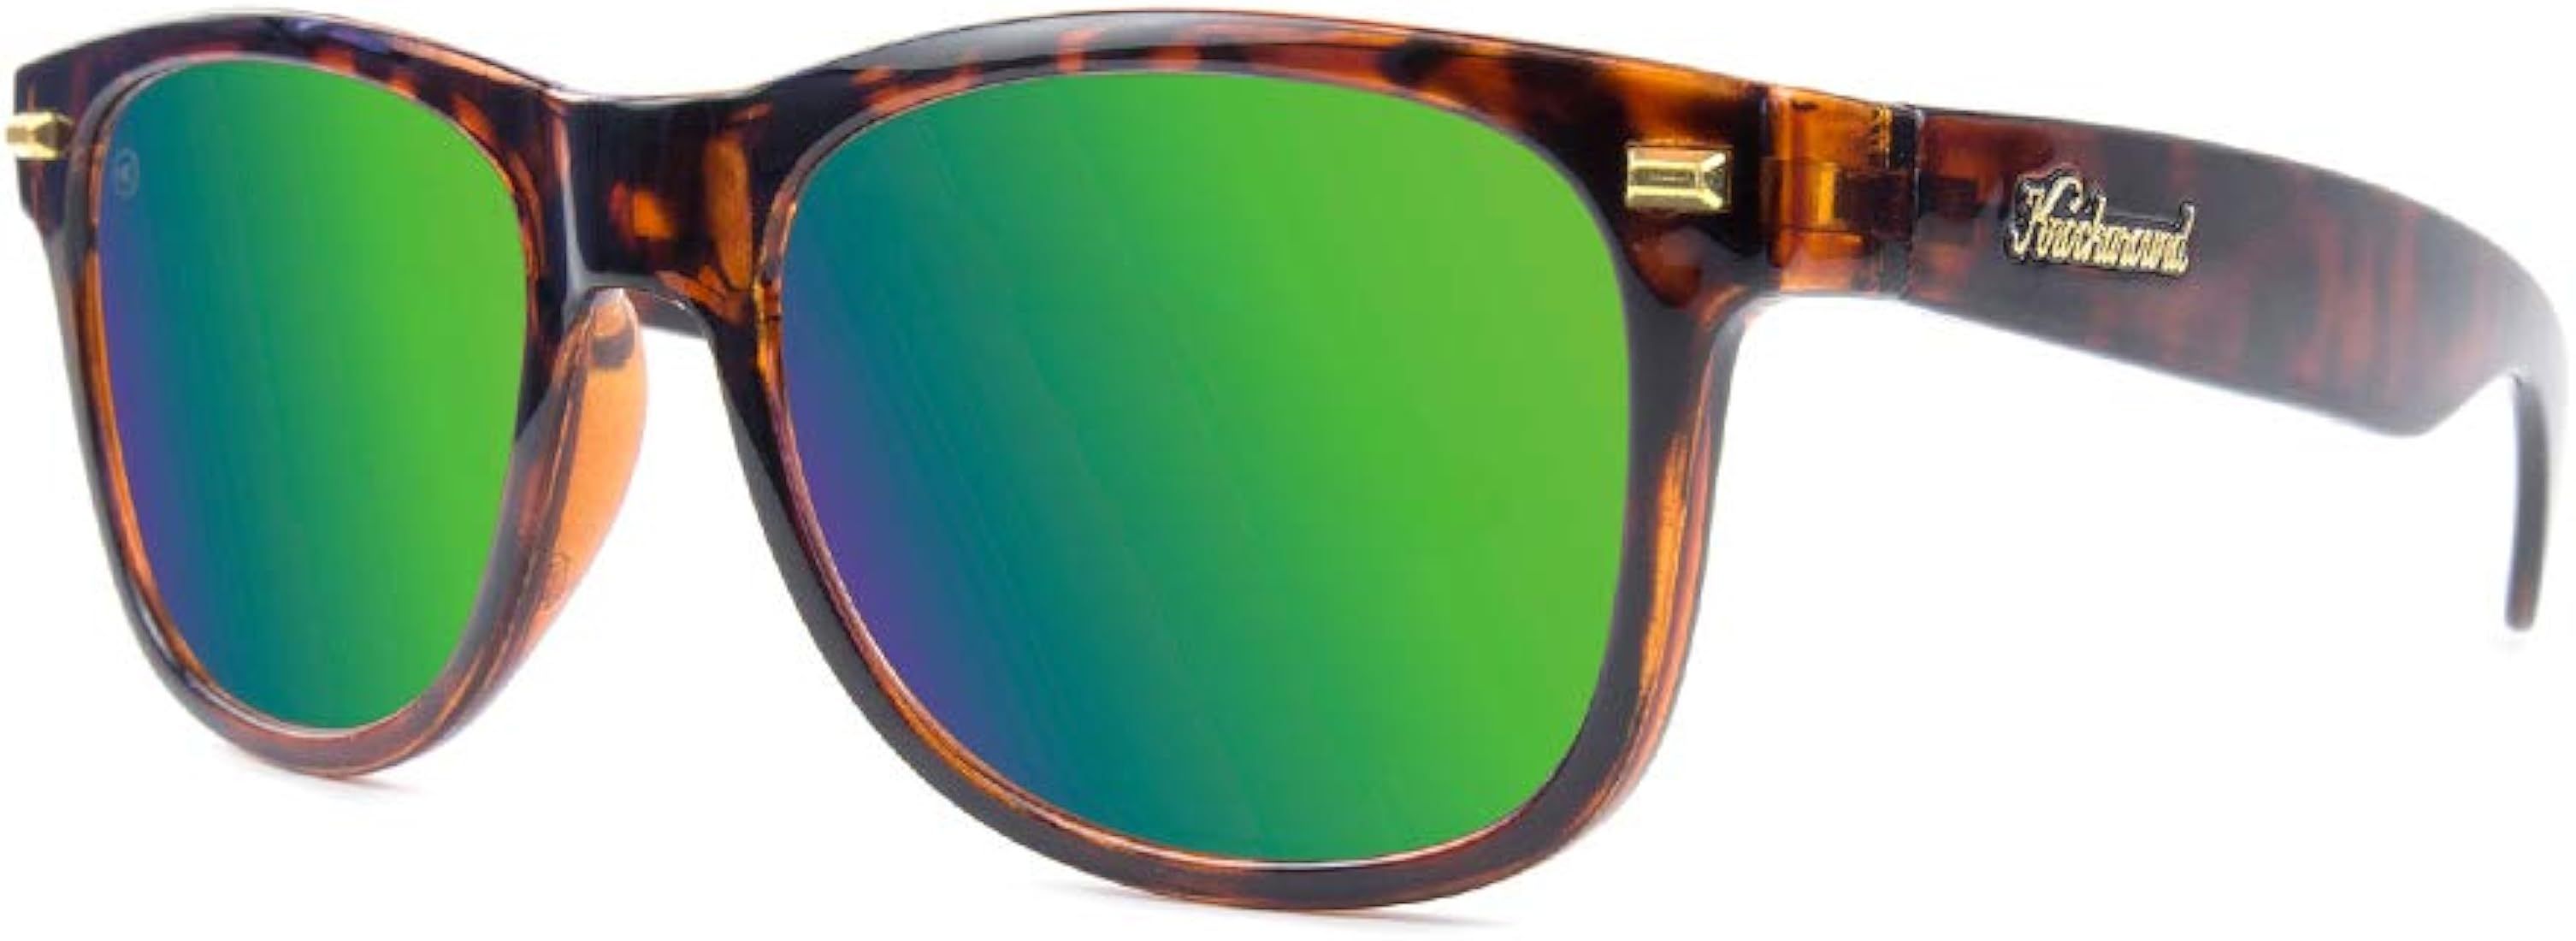 Knockaround Fort Knocks Polarized Sunglasses for Men & Women - Impact Resistant Lenses & Full UV4... | Amazon (US)